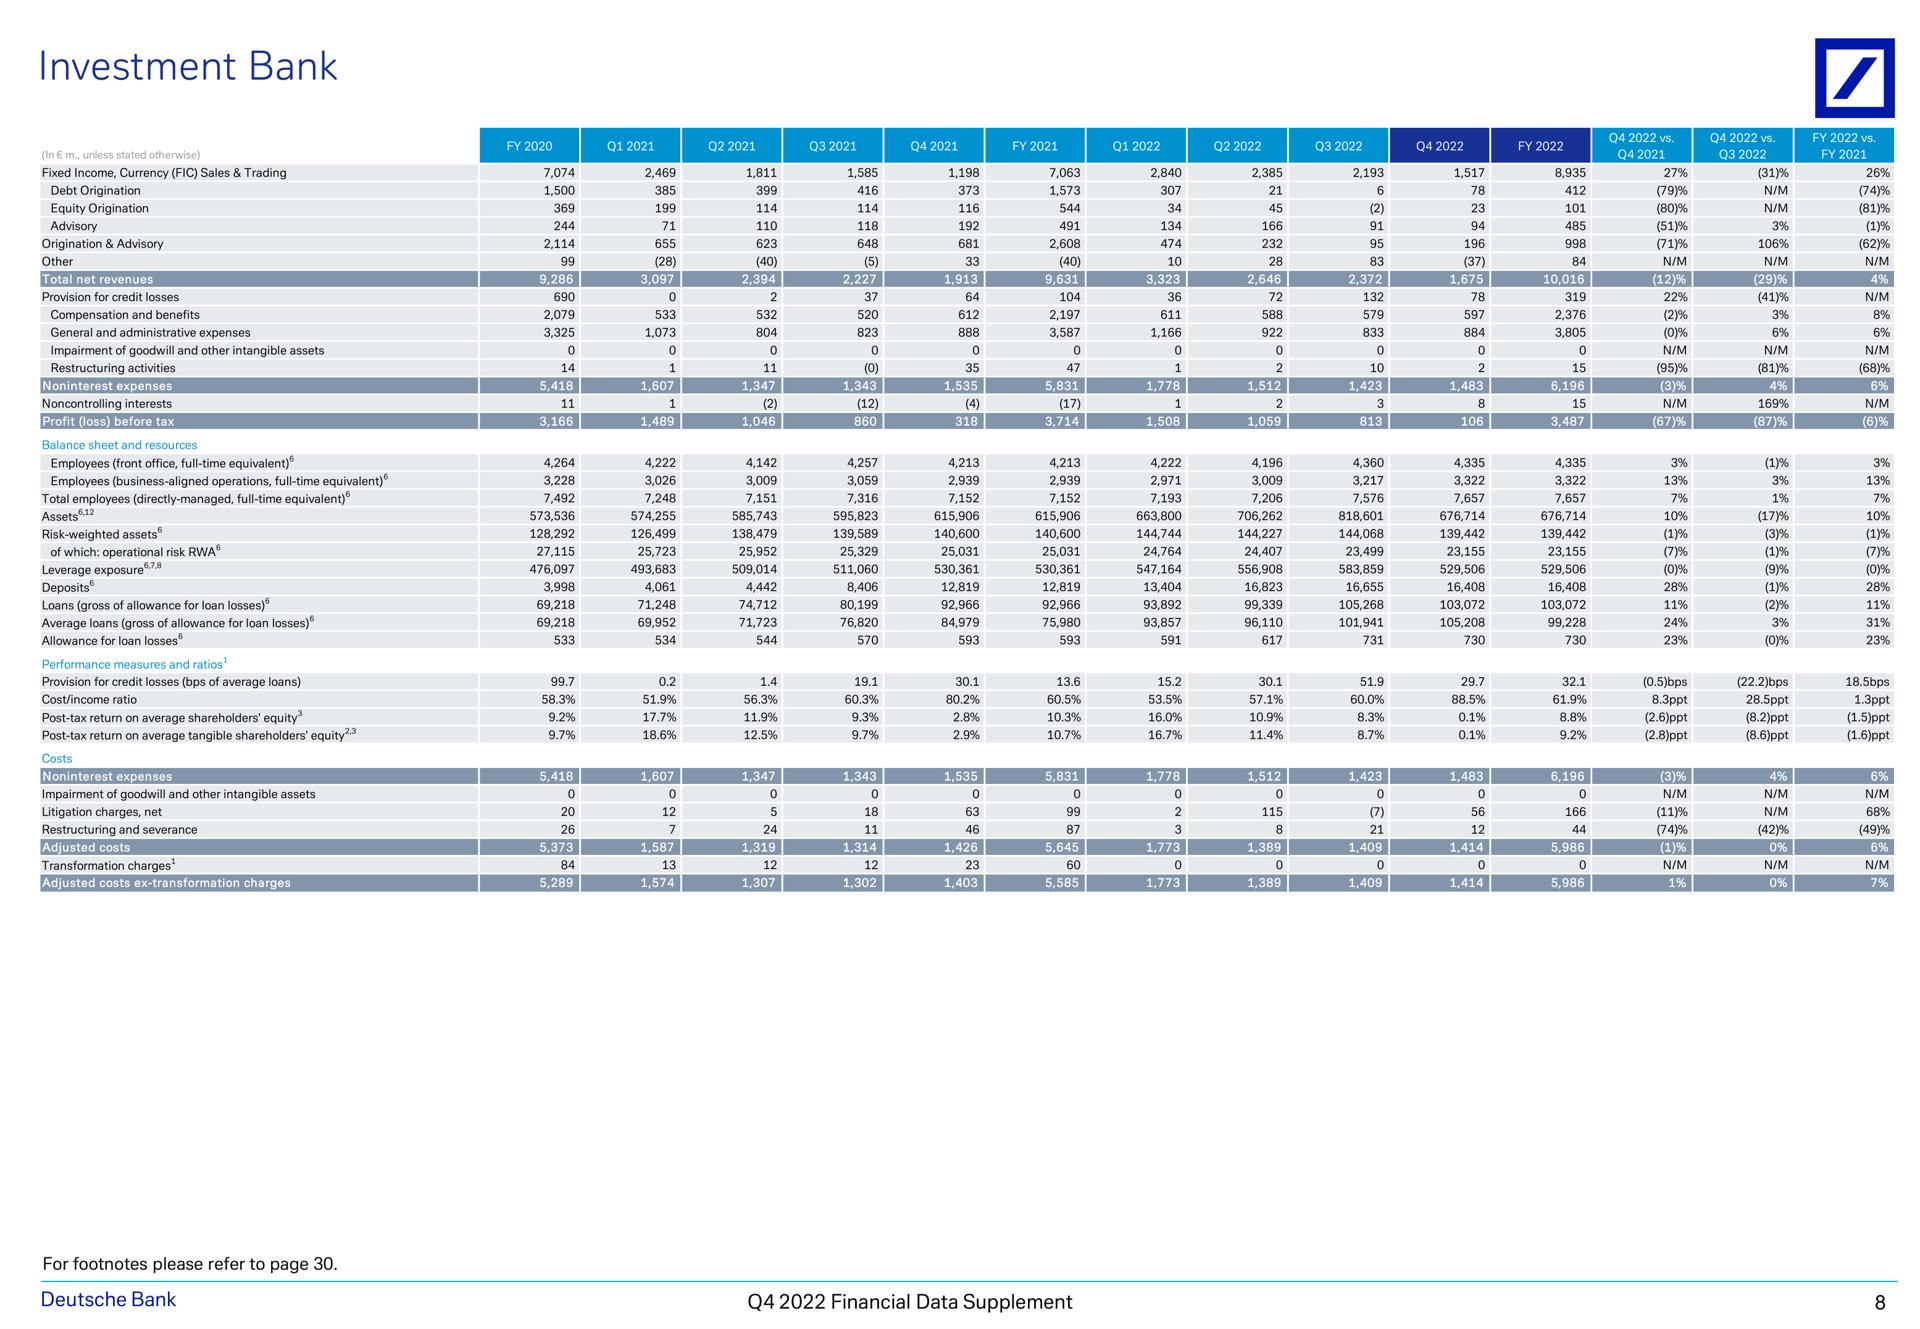 investment bank a a ess at financial data supplement | Deutsche Bank